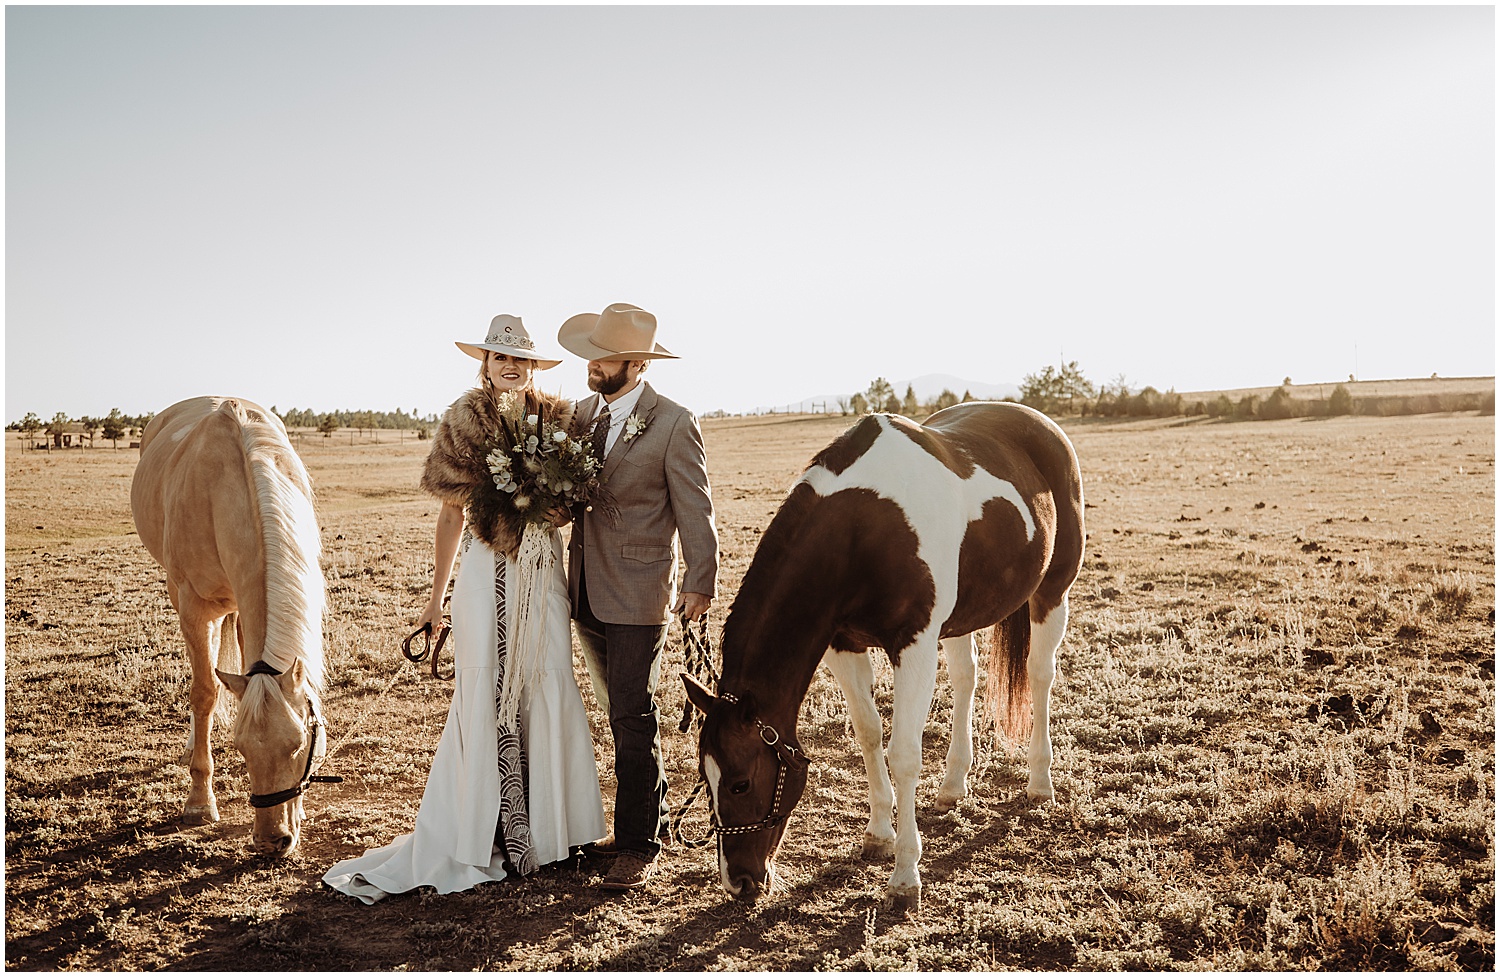 Ковбойская свадьба: незабываемый праздник в стиле кантри